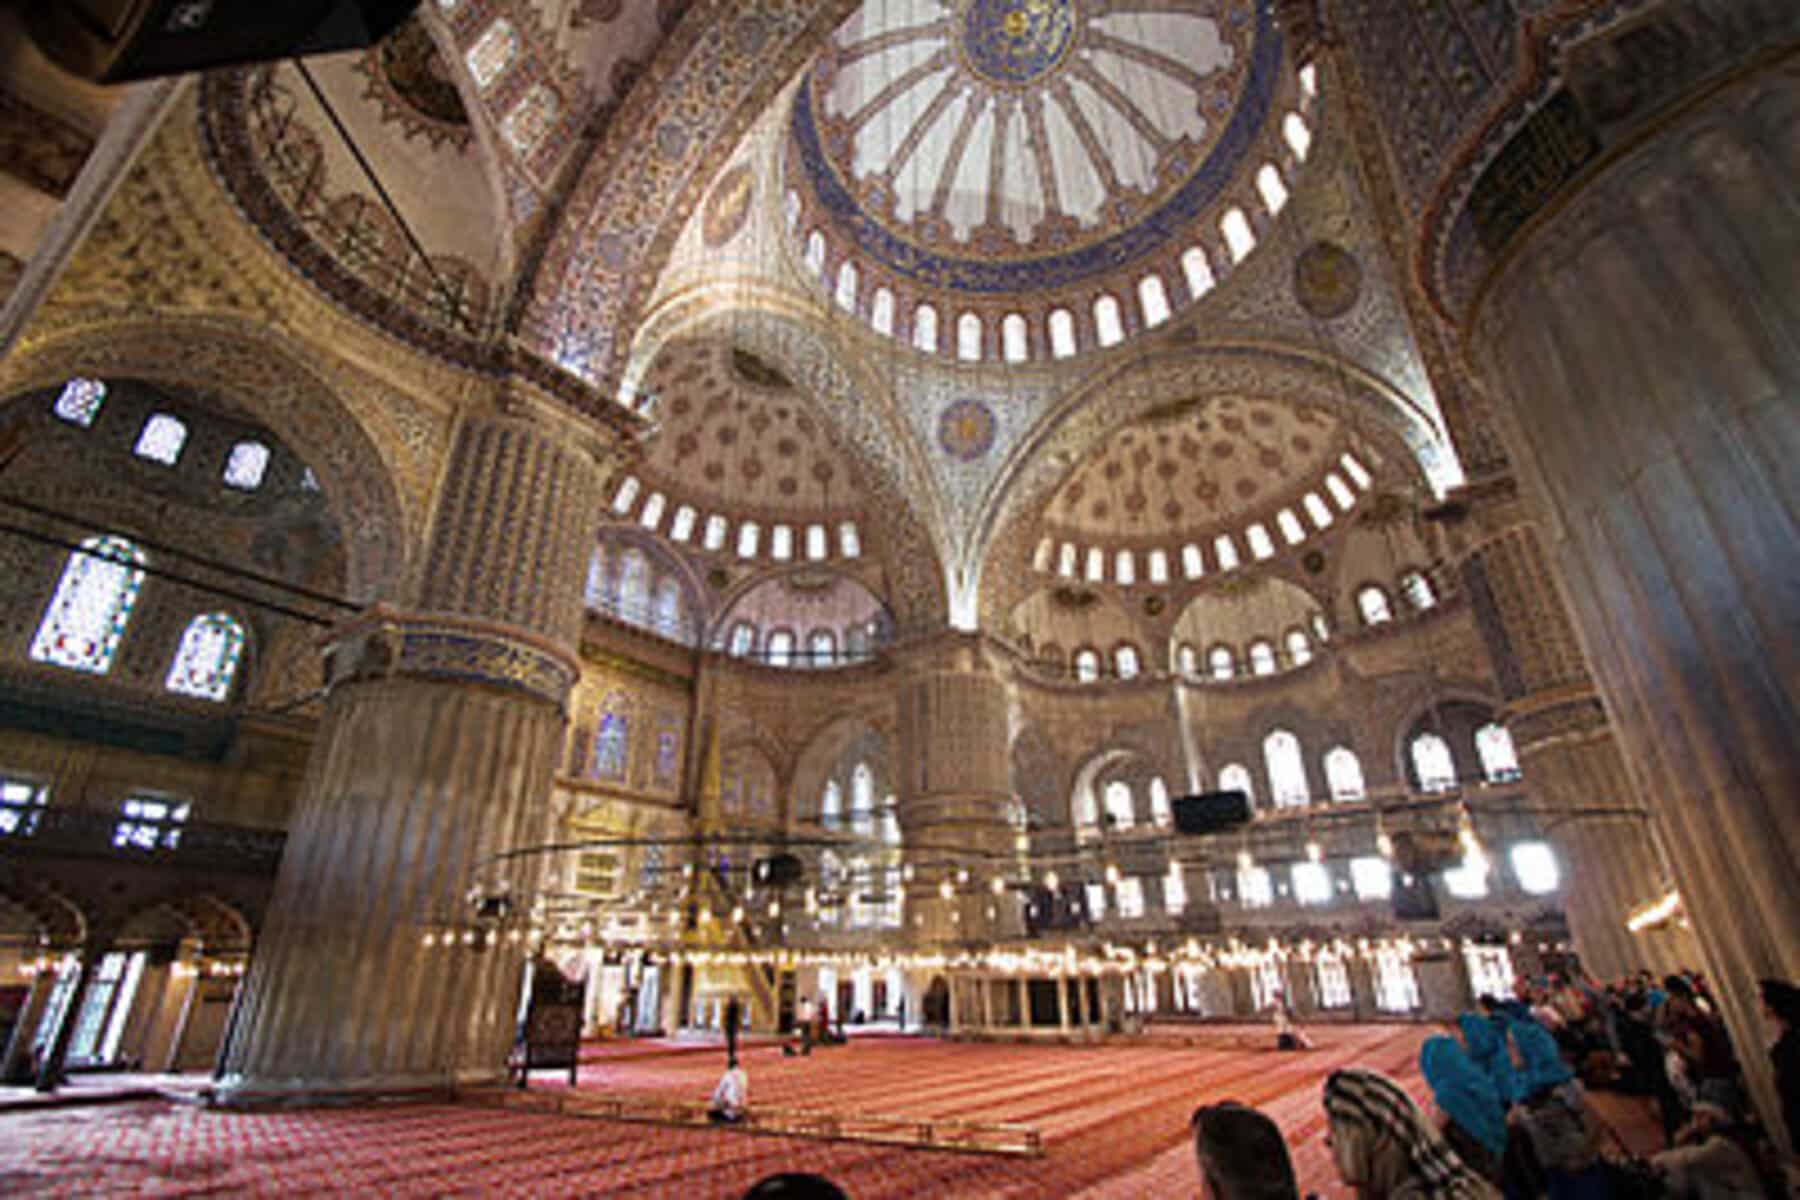 أطفال يحولون مسجد إلى ملعب كرة في تركيا...نشطاء ينددون وداعية يعلق